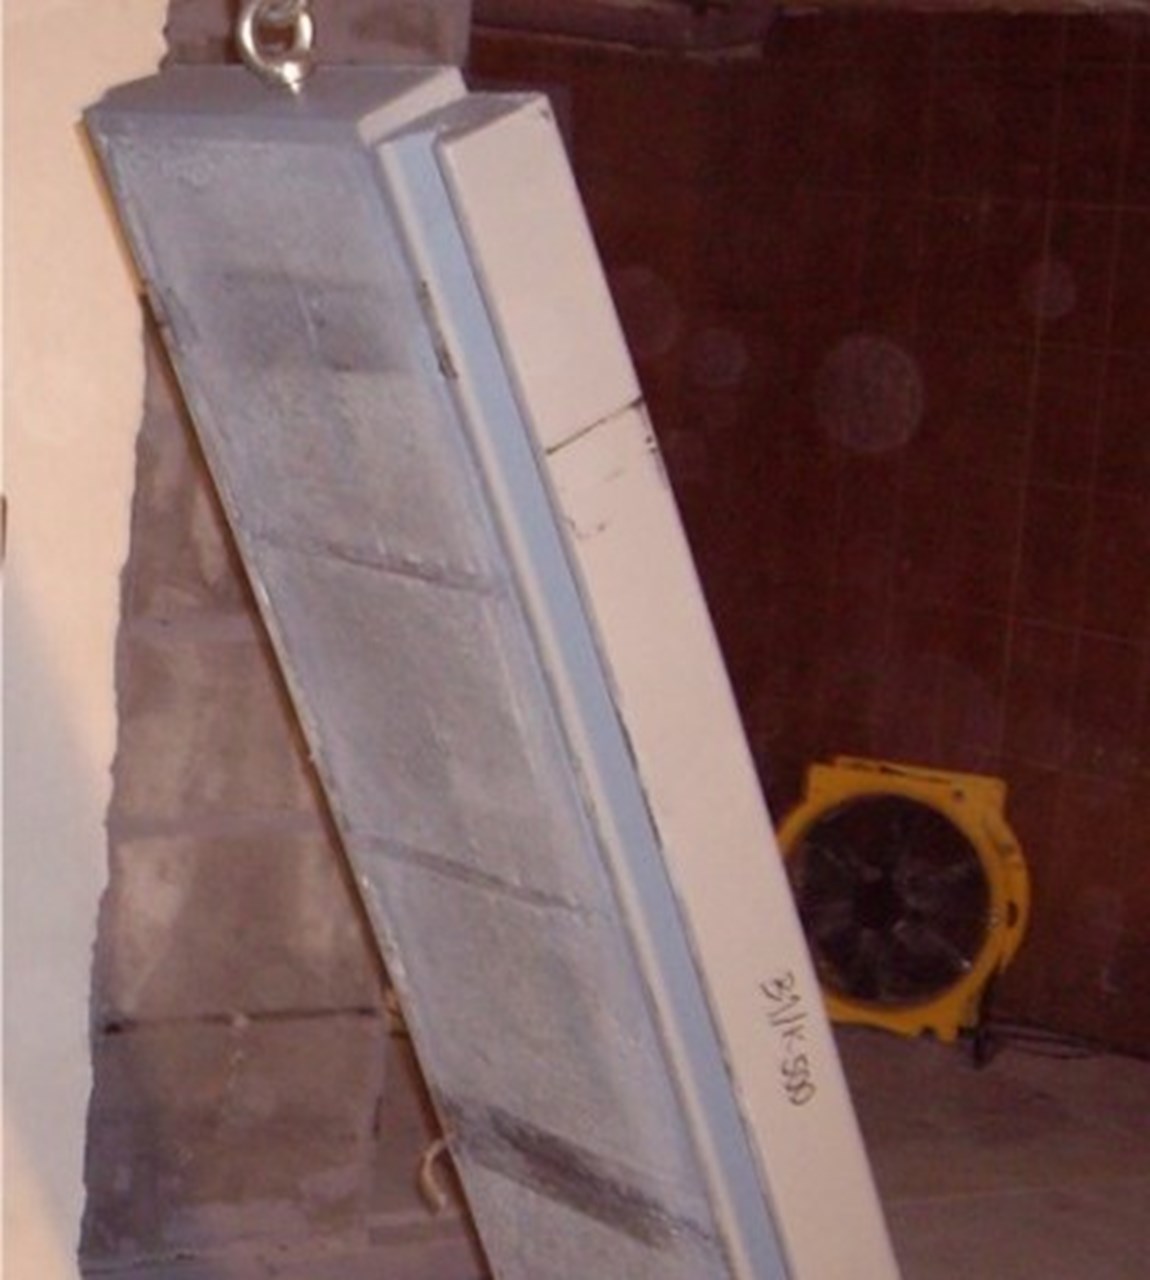 Construction of a Modulprim vault room